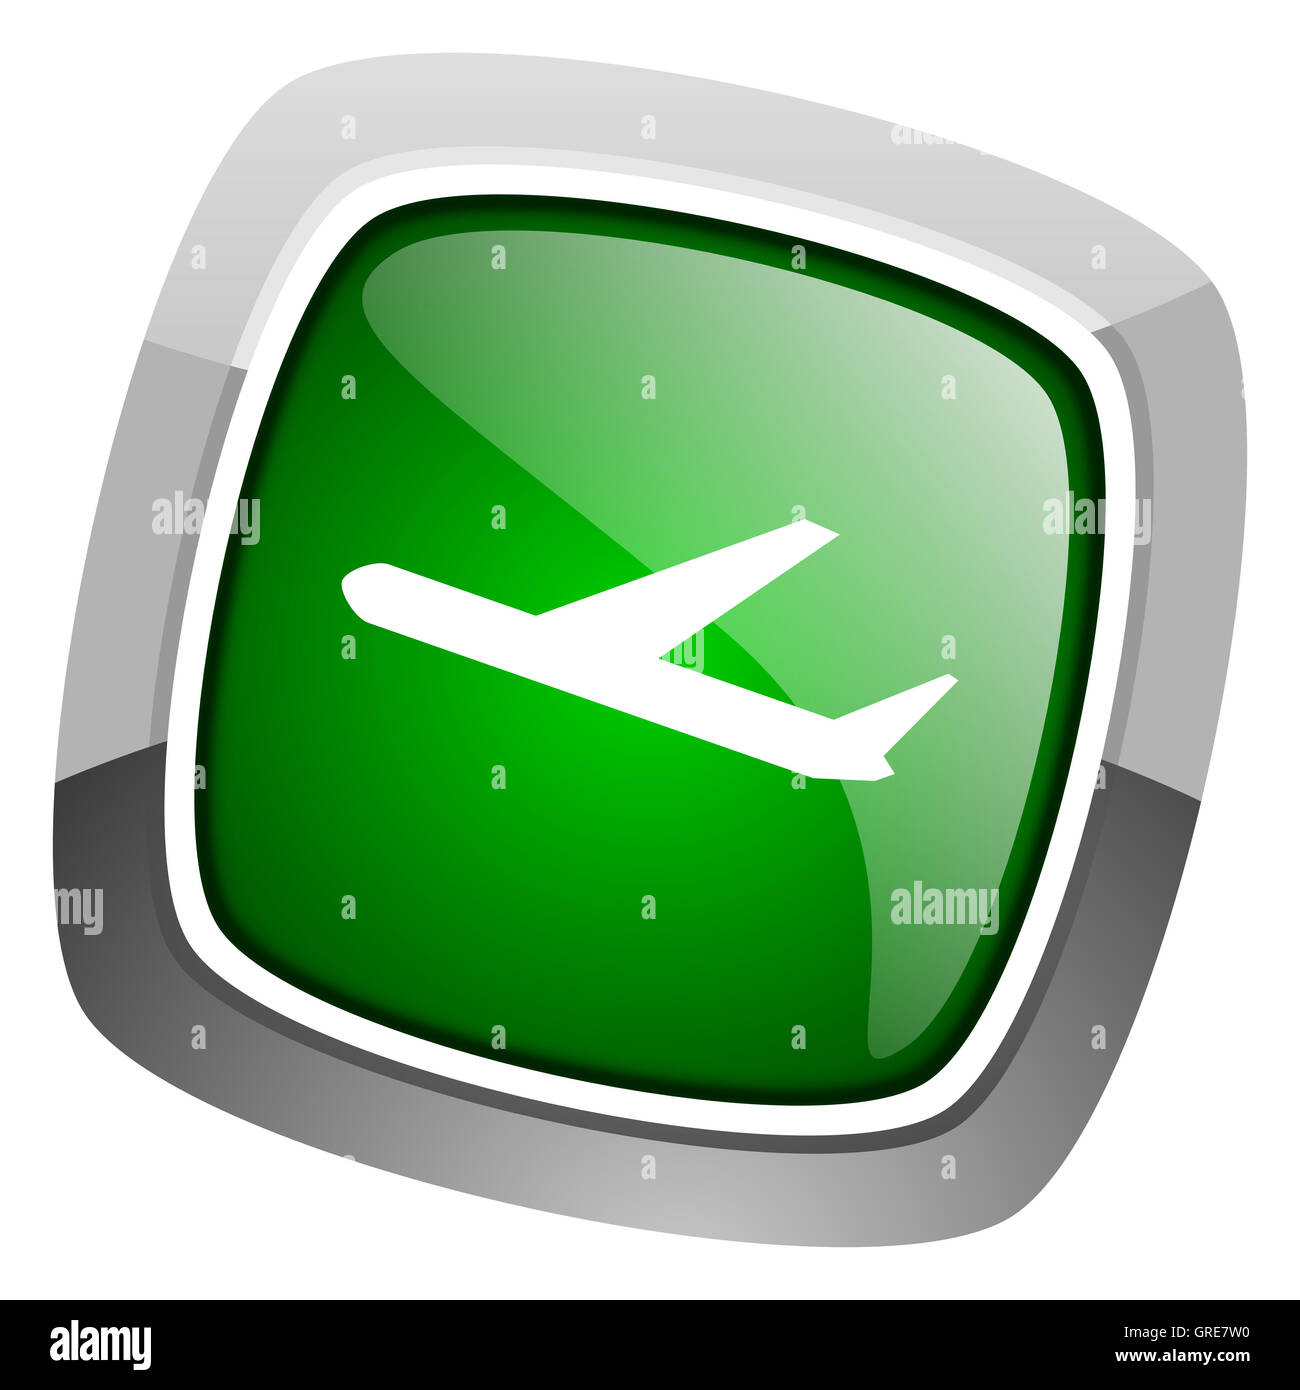 departures icon Stock Photo - Alamy